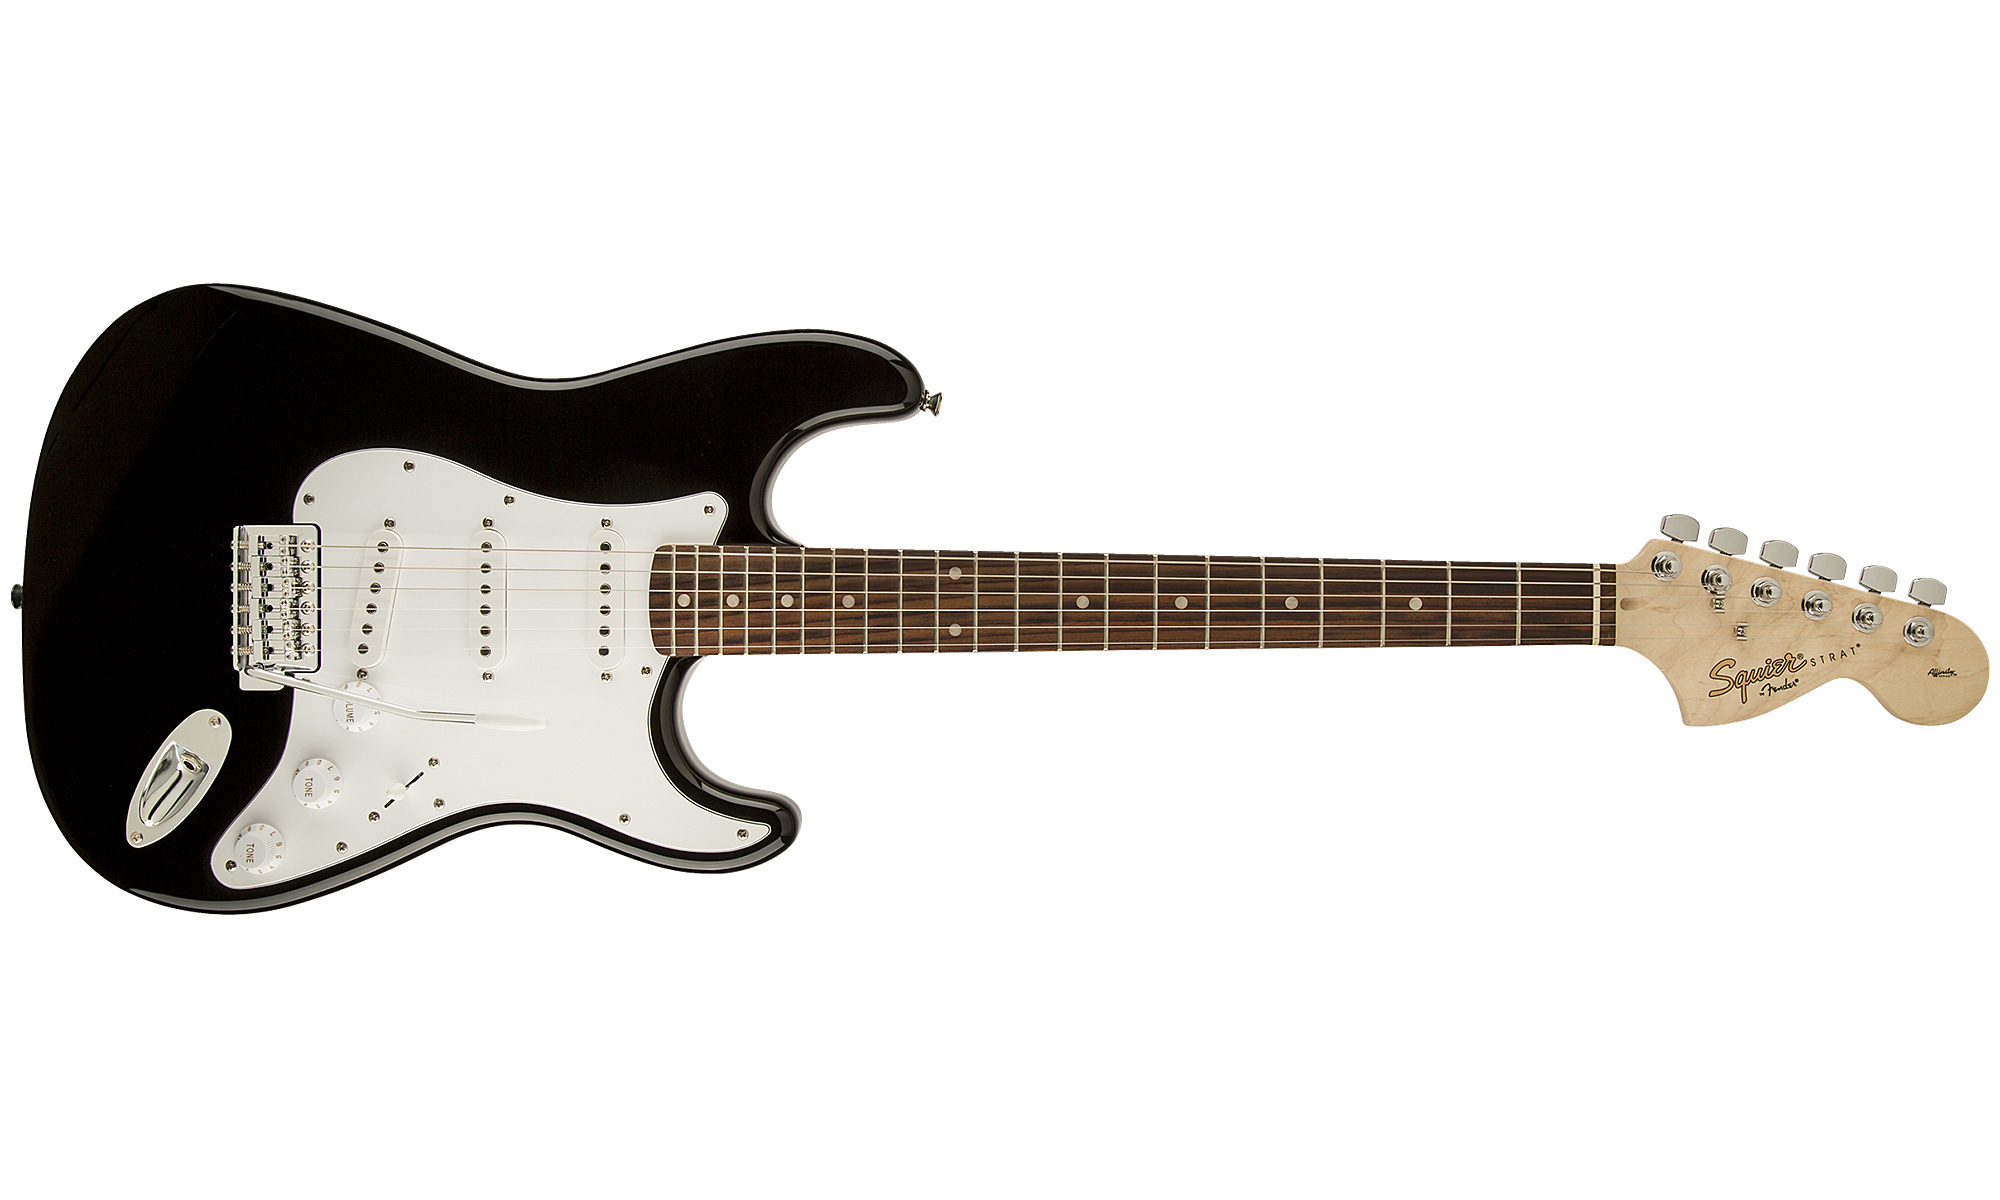 Squier Strat Affinity Series 3s Rw - Black - Guitarra eléctrica con forma de str. - Variation 4